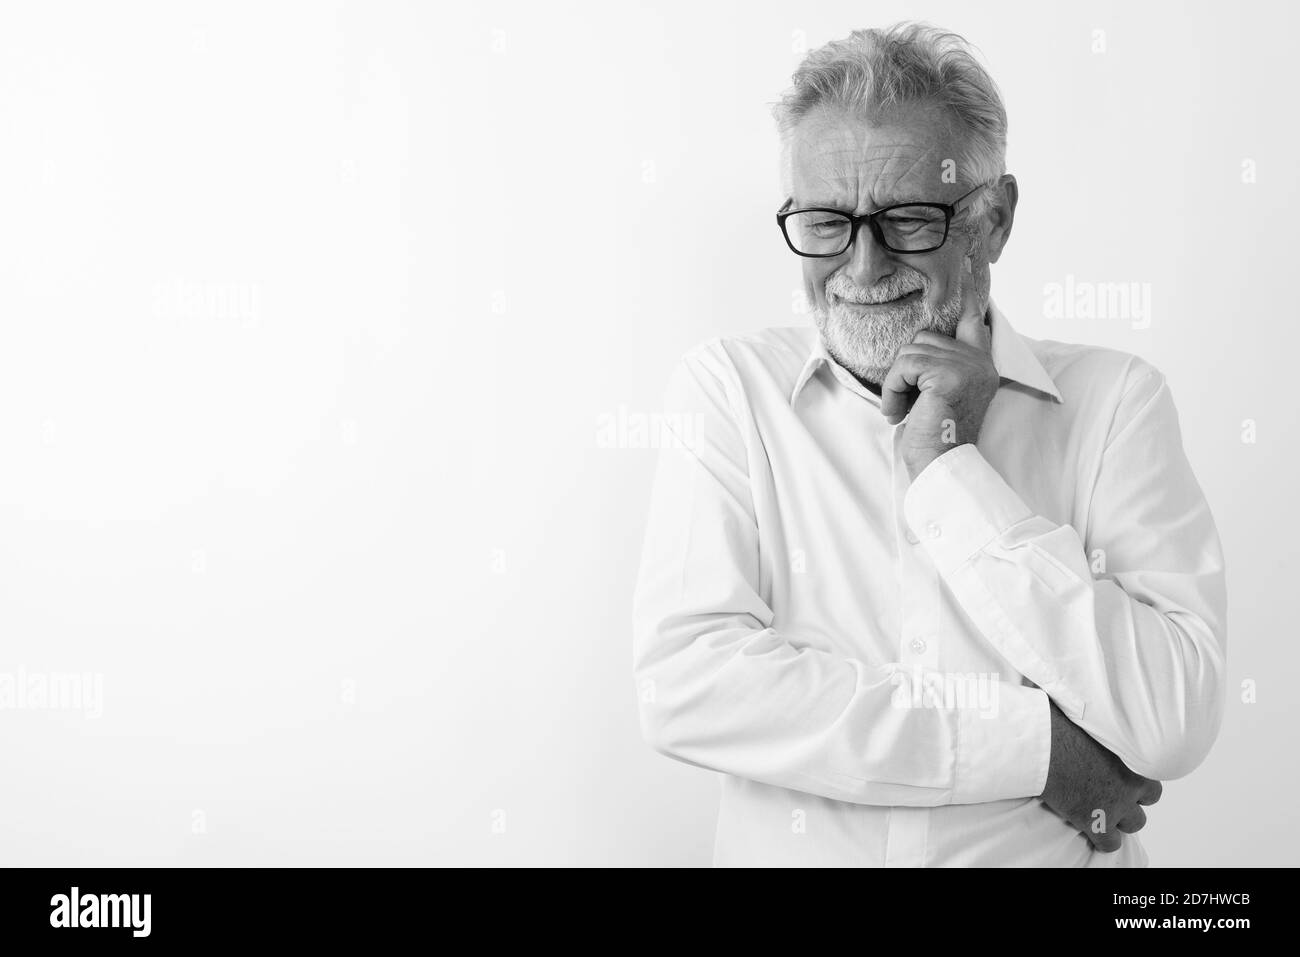 Studio shot of senior triste pensée homme barbu avec des lunettes en pleurant contre fond blanc Banque D'Images